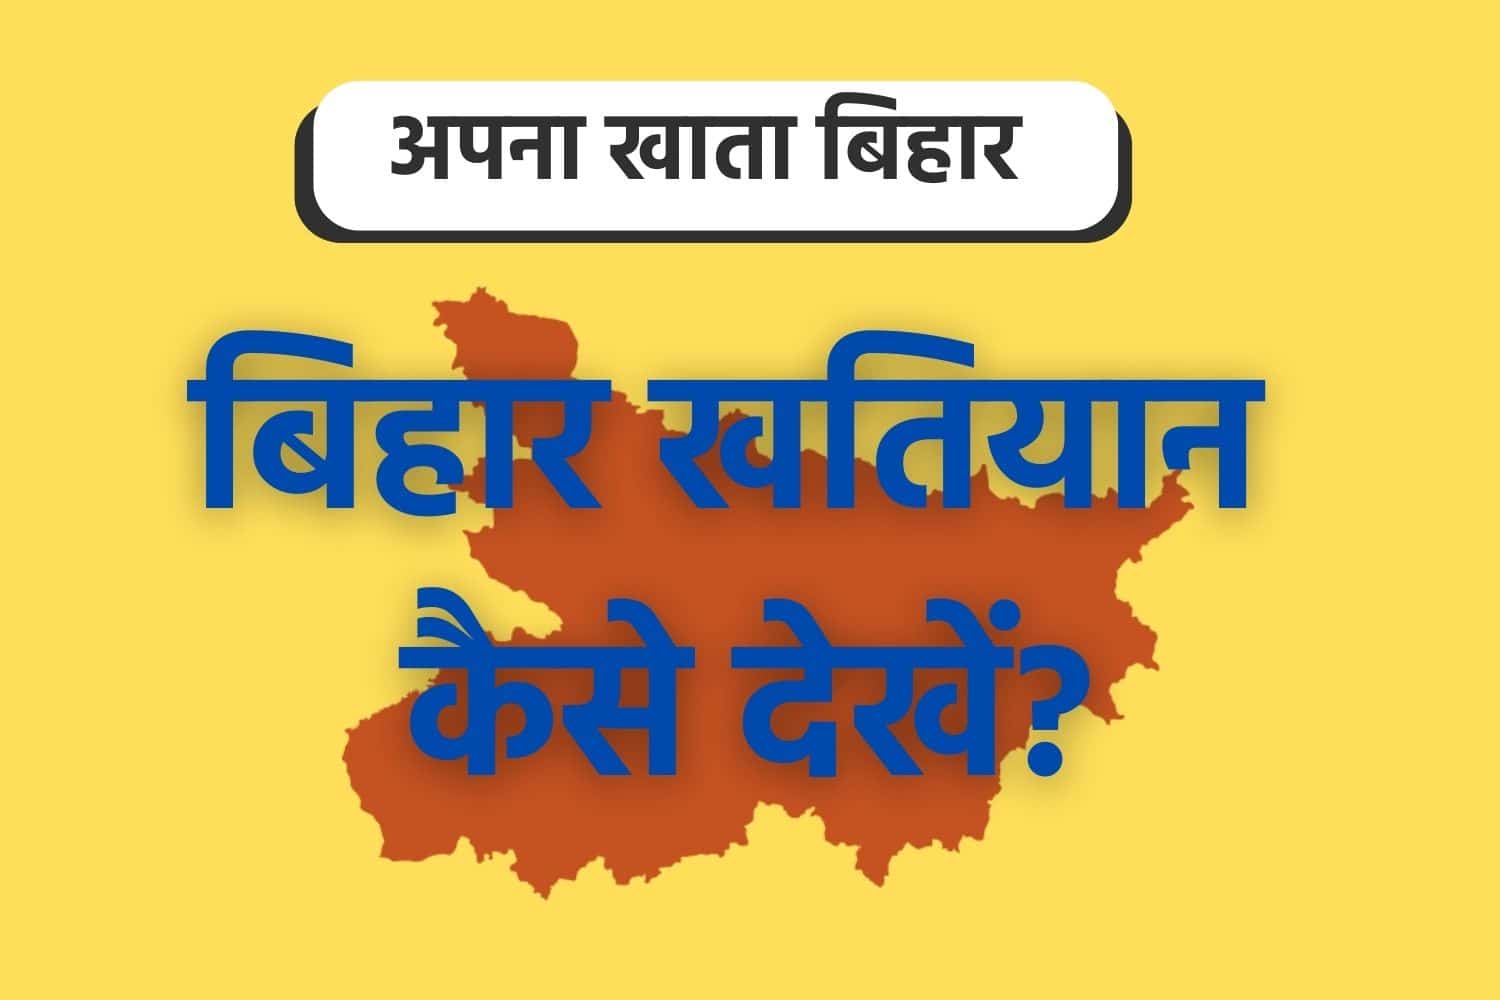 Apna Khata Bihar : बिहार खतियान कैसे देखें?